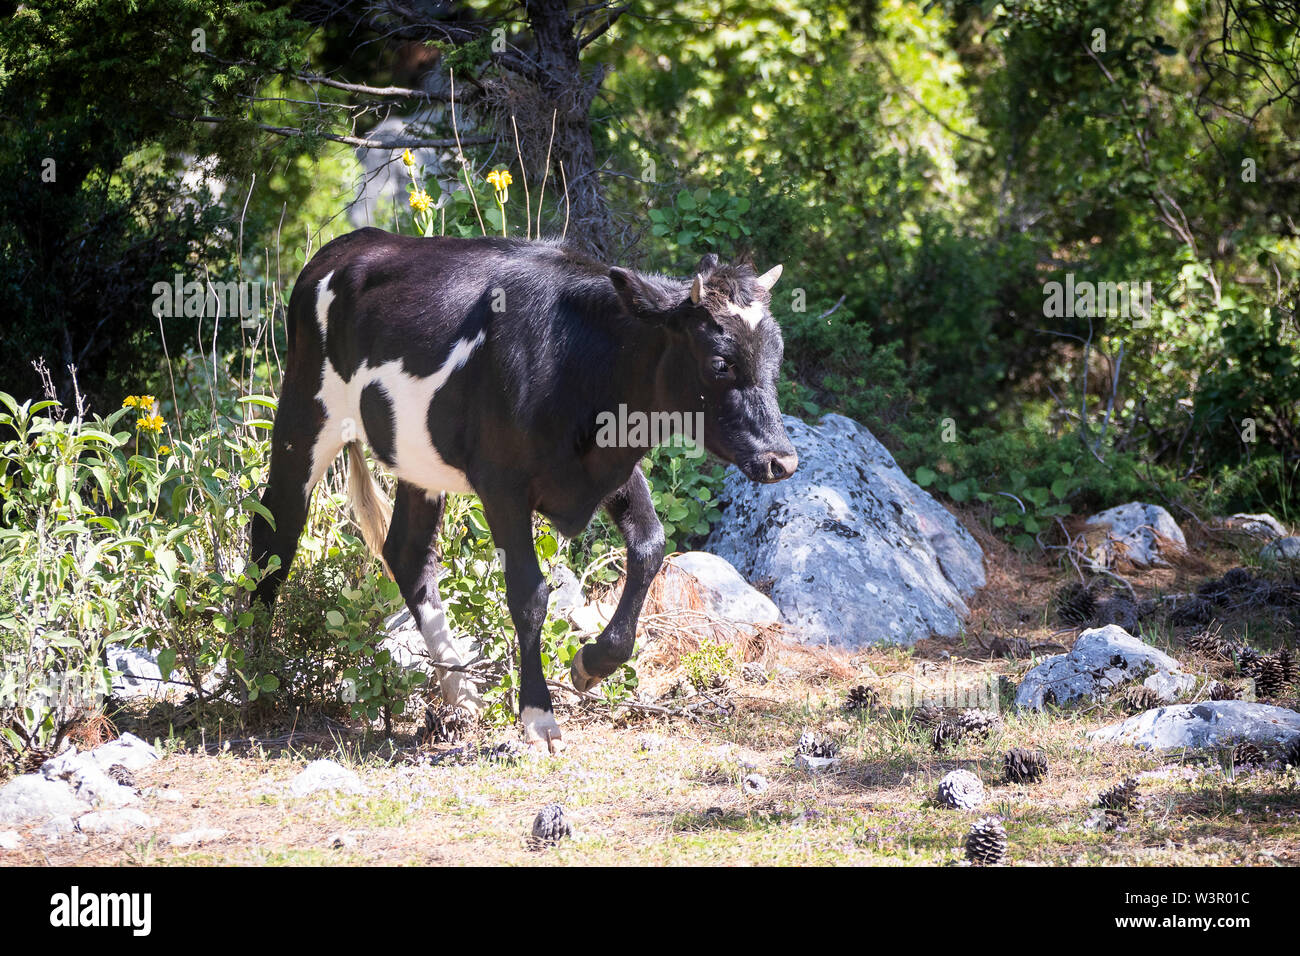 El ganado doméstico. Alcance libre de ganado en blanco y negro. Einfyayla, Turquía Foto de stock